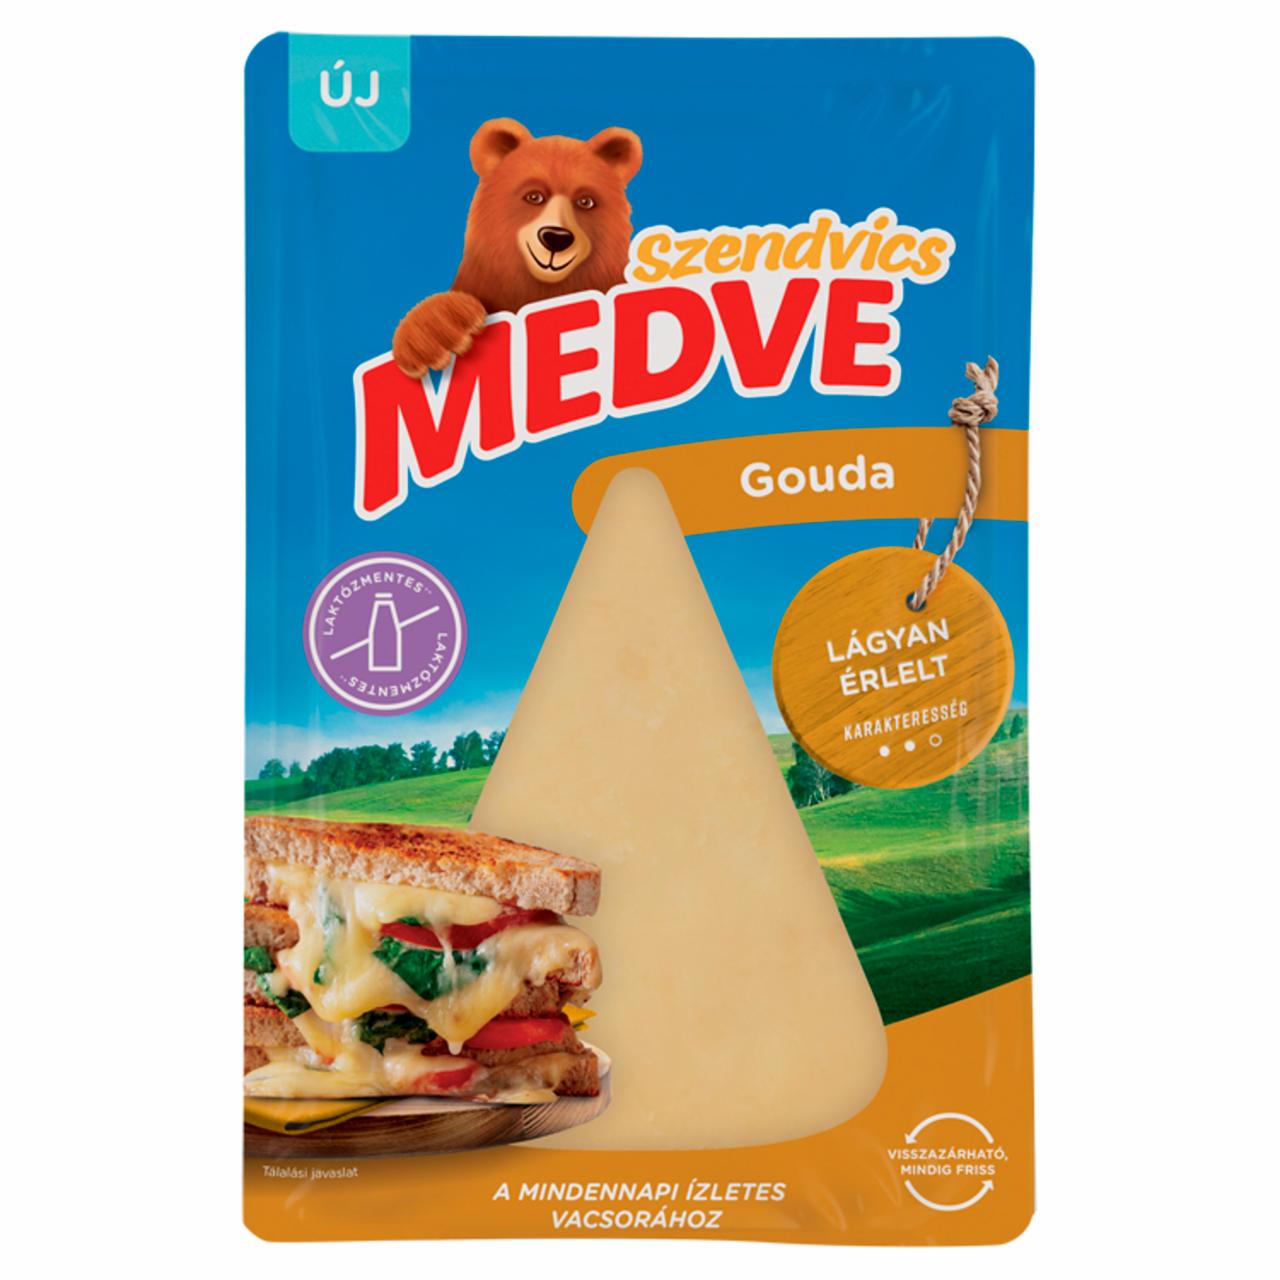 Képek - Medve Szendvics zsíros, félkemény, szeletelt gouda sajt 100 g